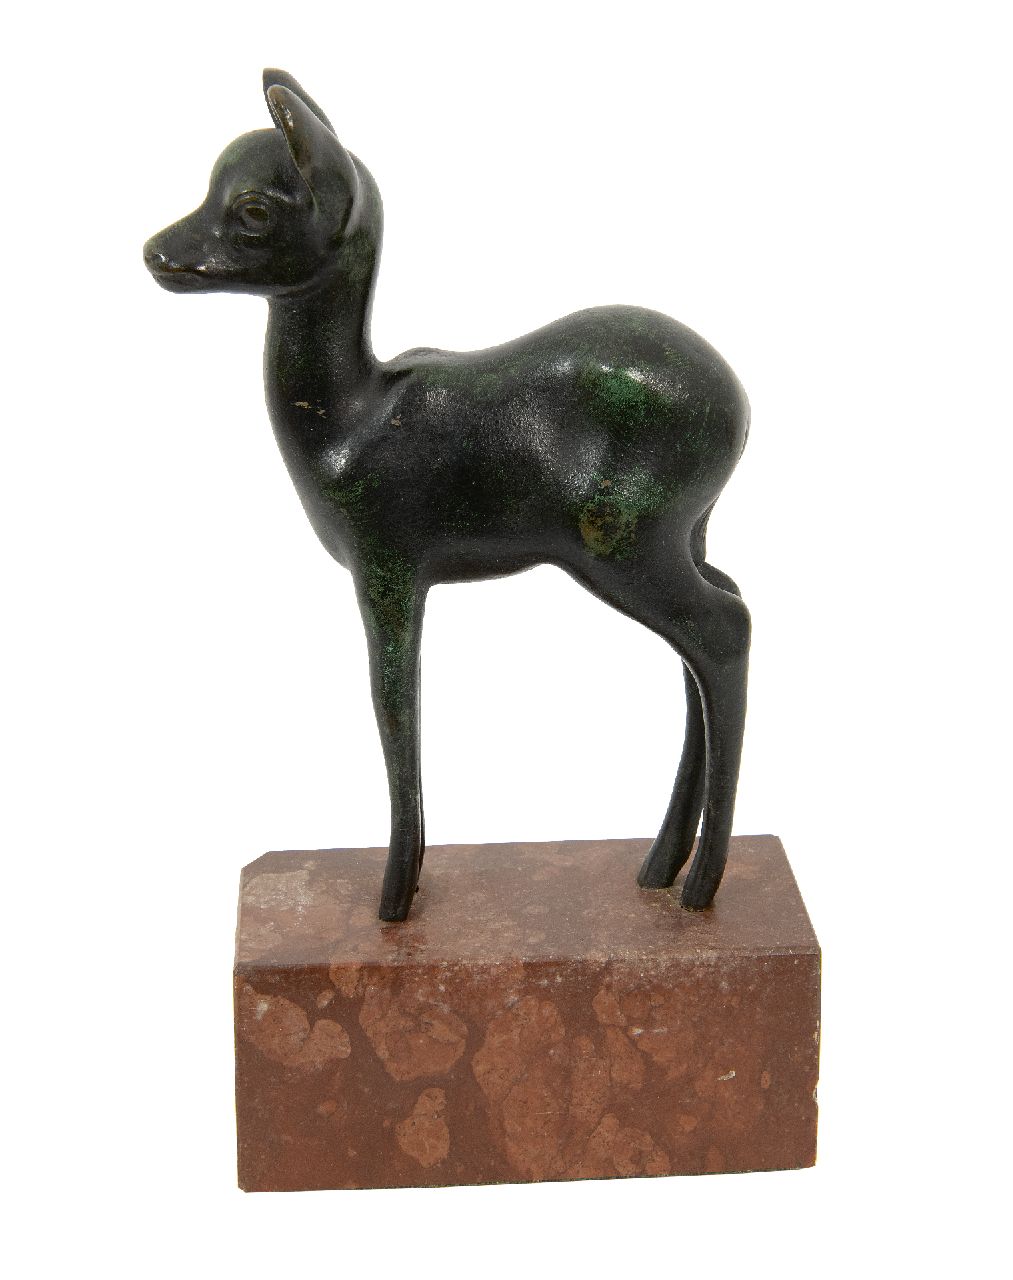 Duitse School (2e helft 19e eeuw)   | Duitse School (2e helft 19e eeuw) | Sculptures and objects offered for sale | Young deer, bronze 14.0 x 3.5 cm